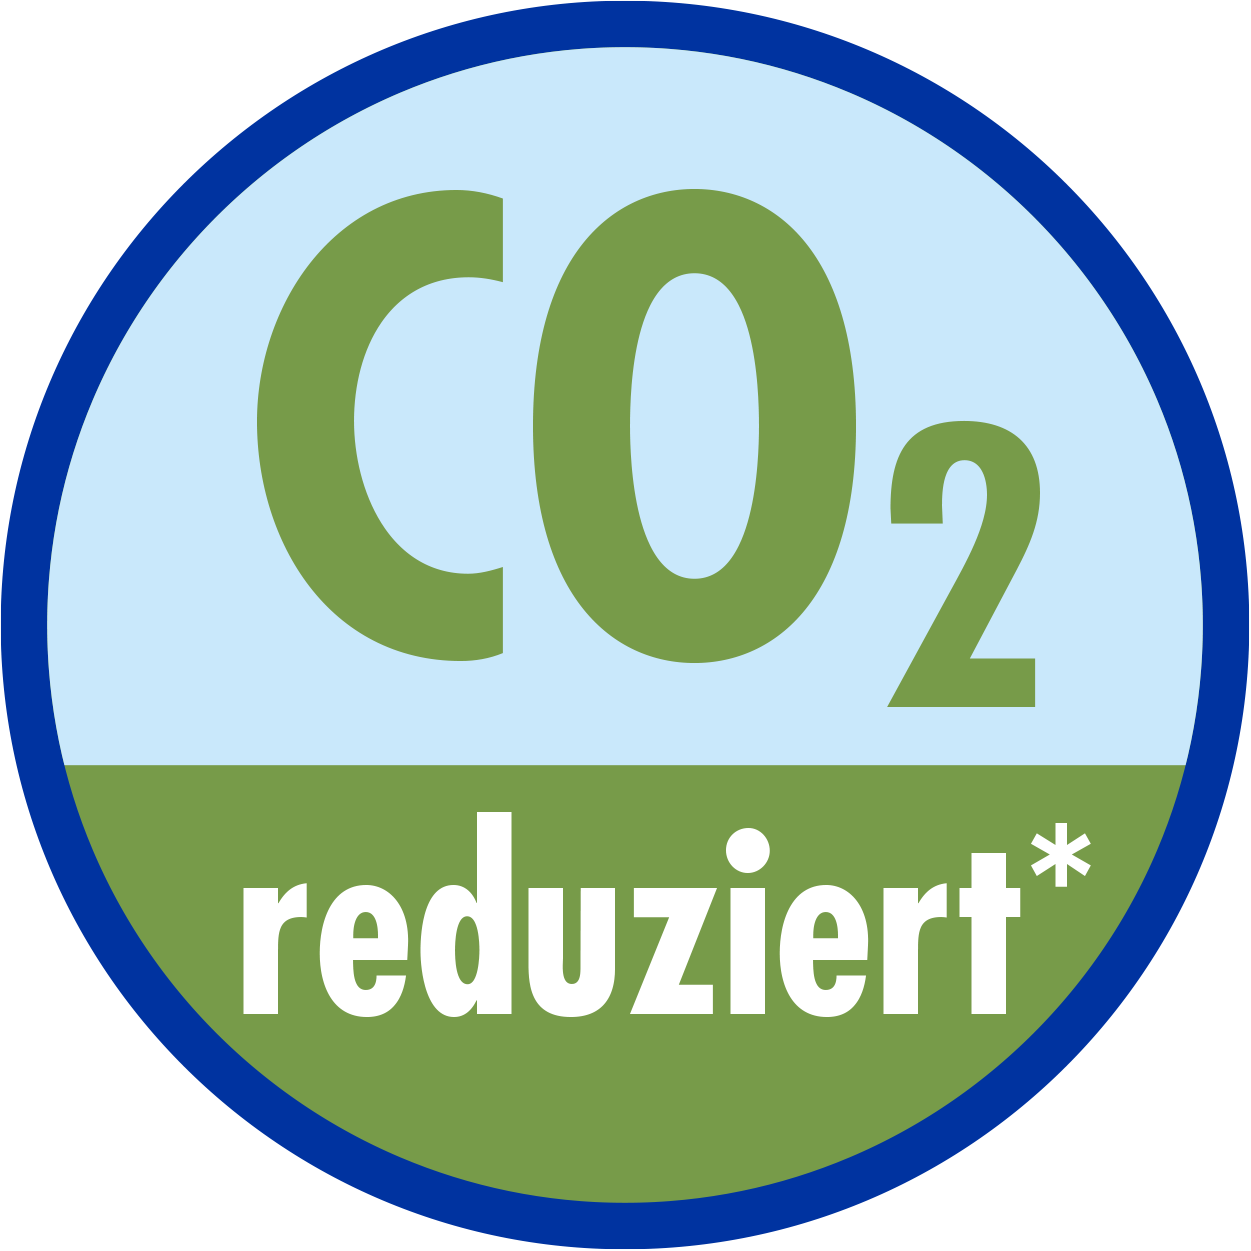 CO2-reduziert